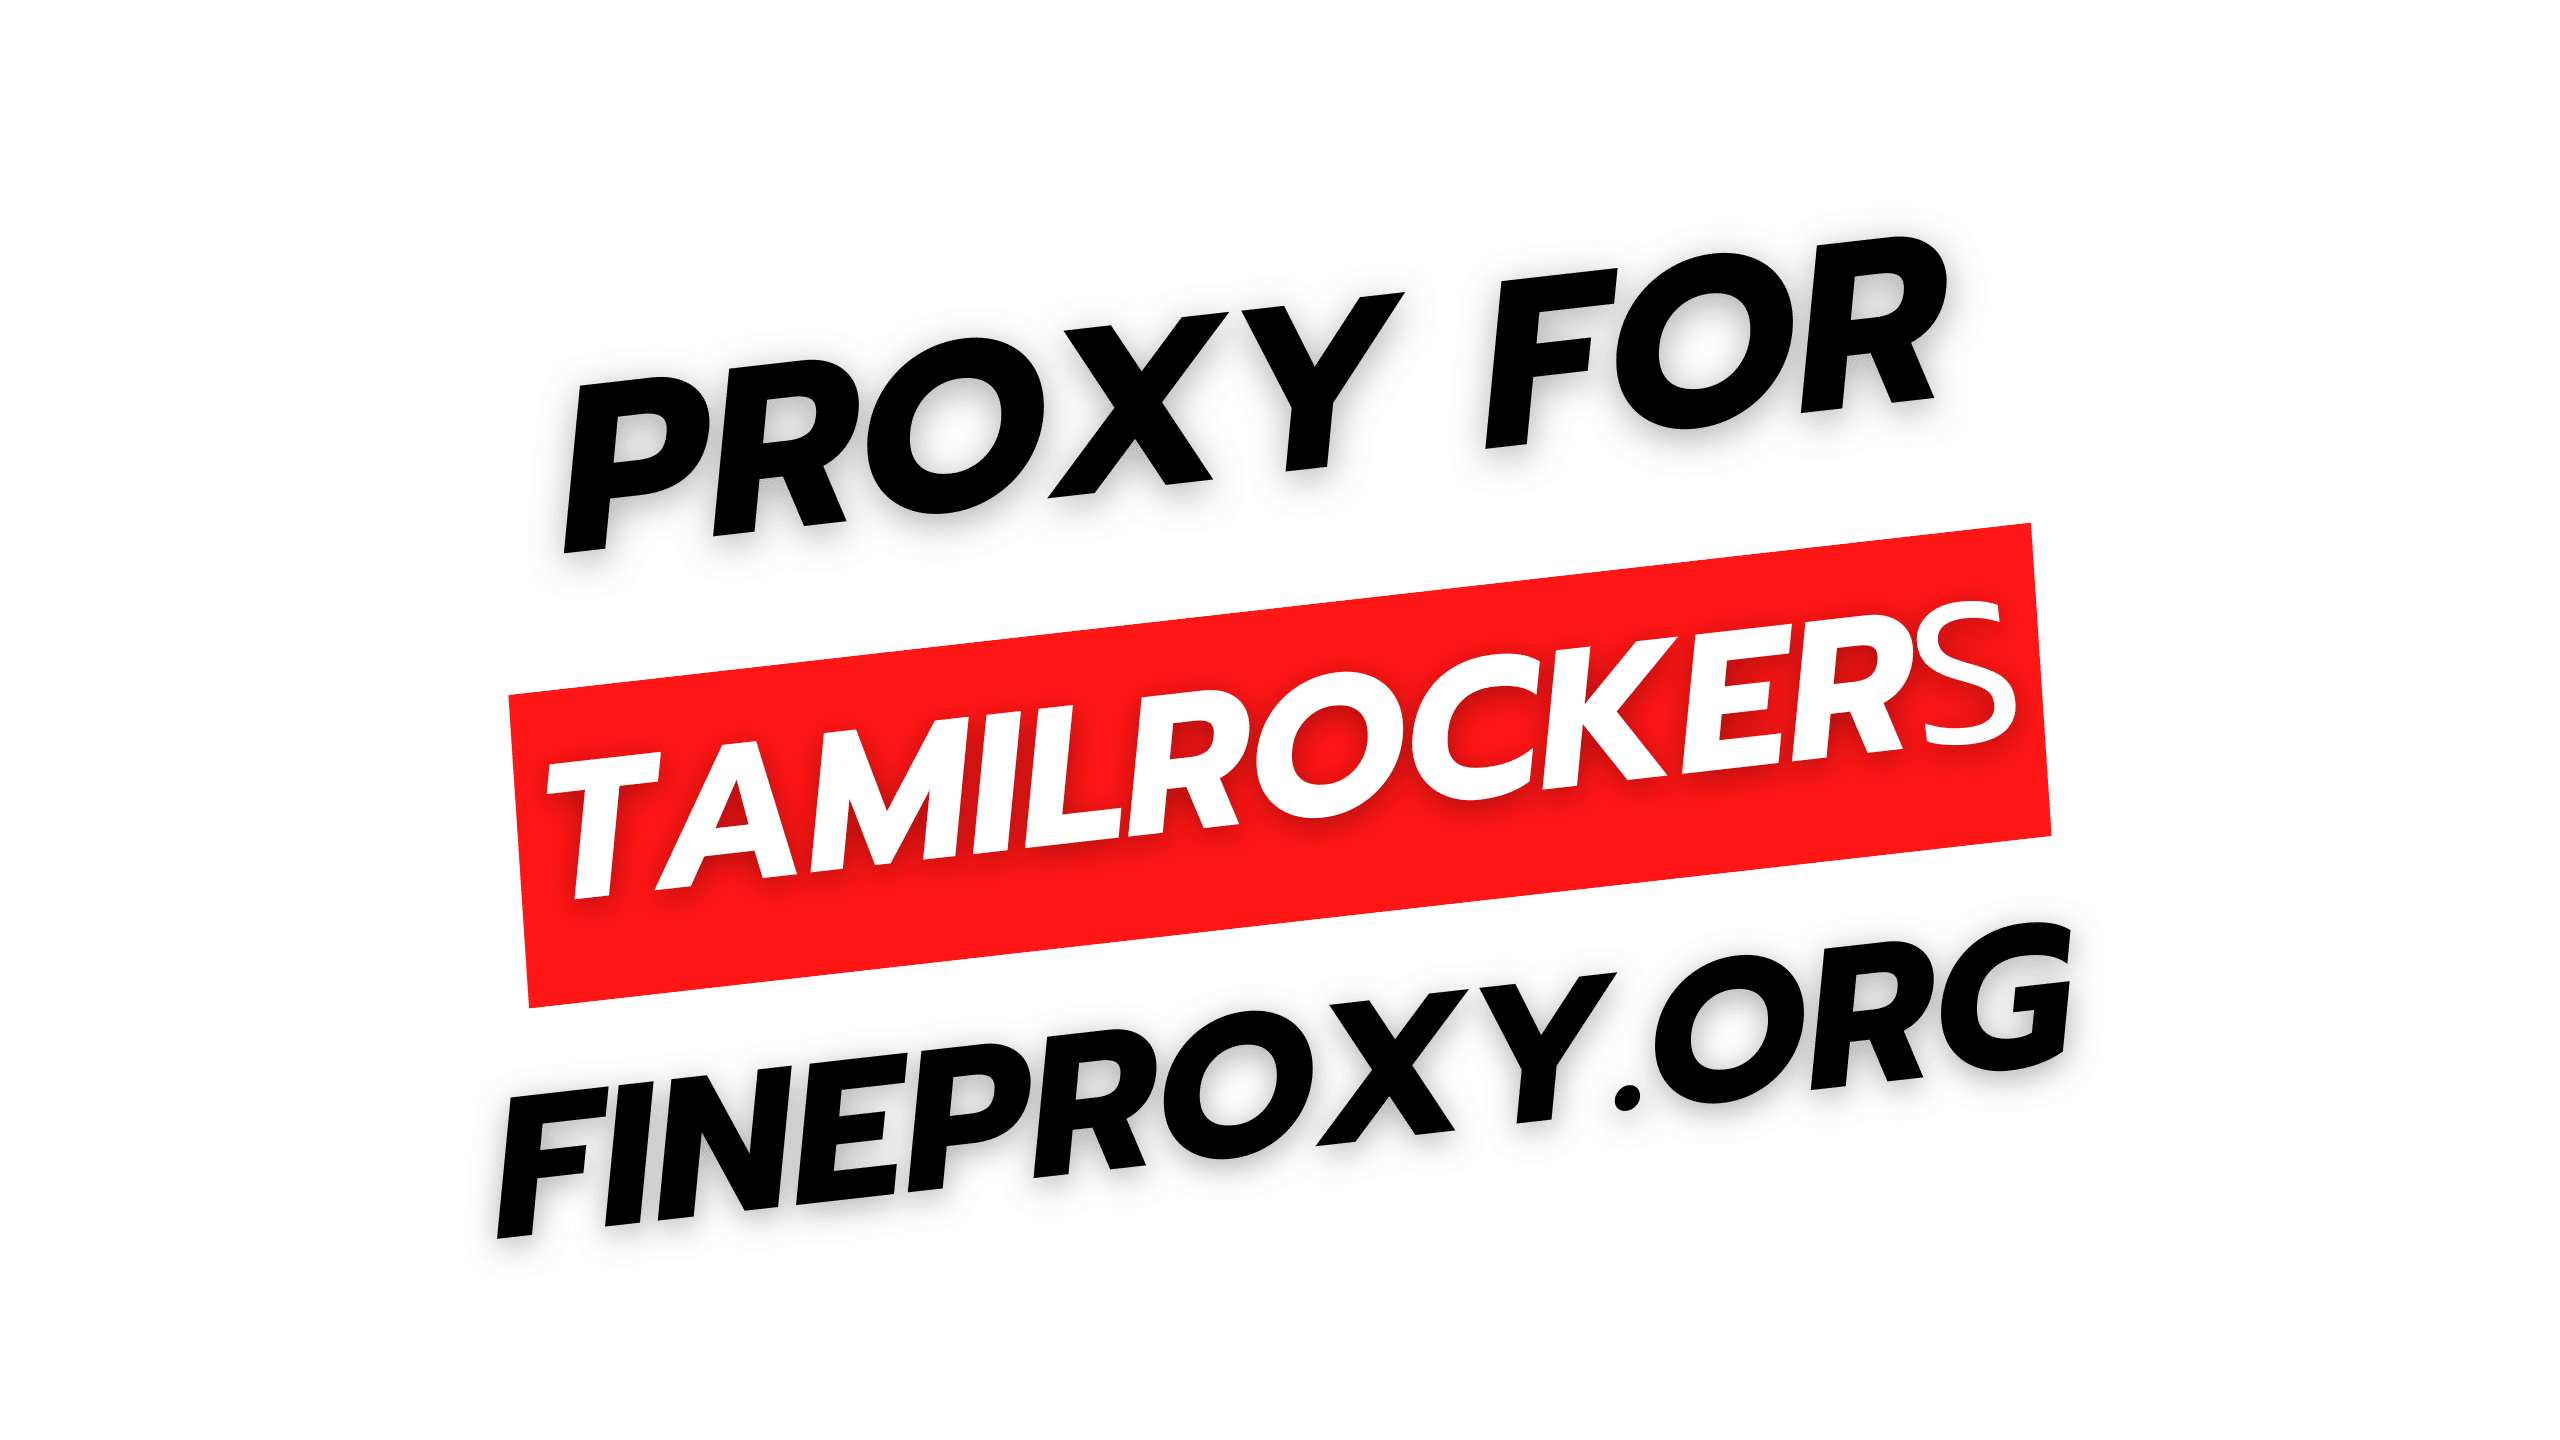 rockeros tamil